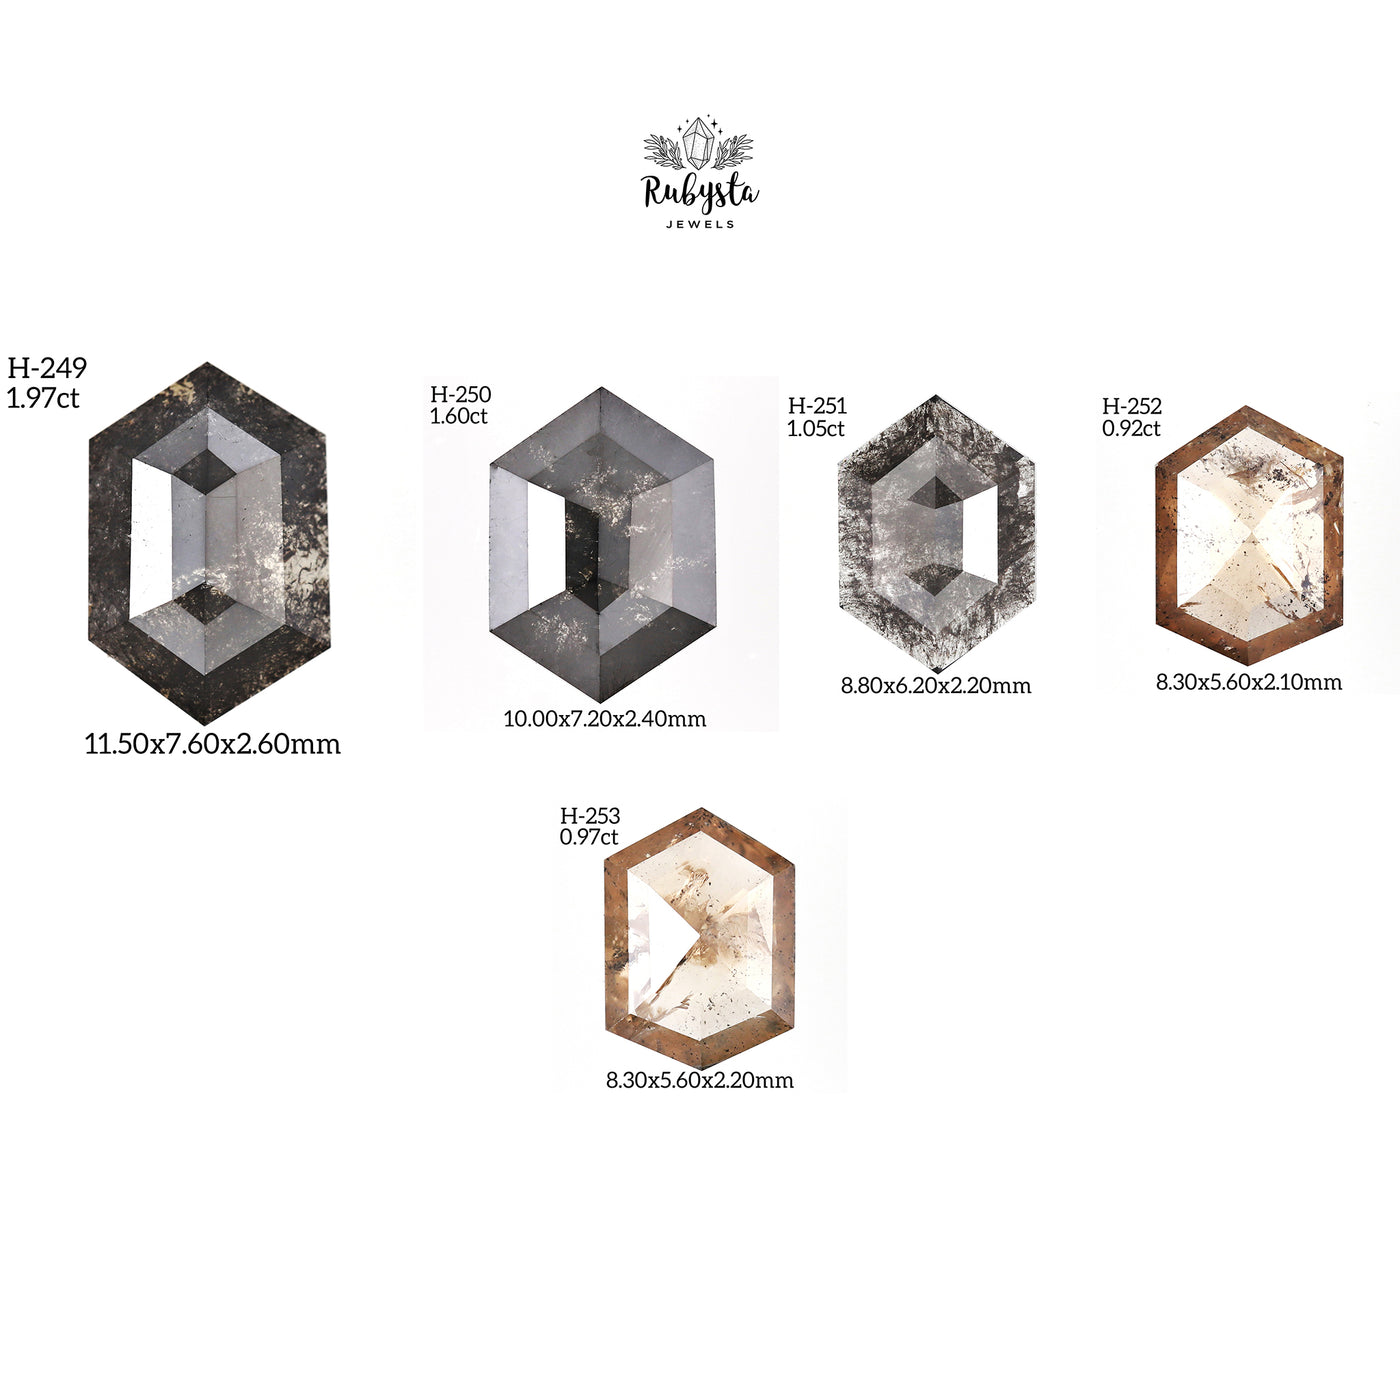 H252 - Salt and pepper hexagon diamond